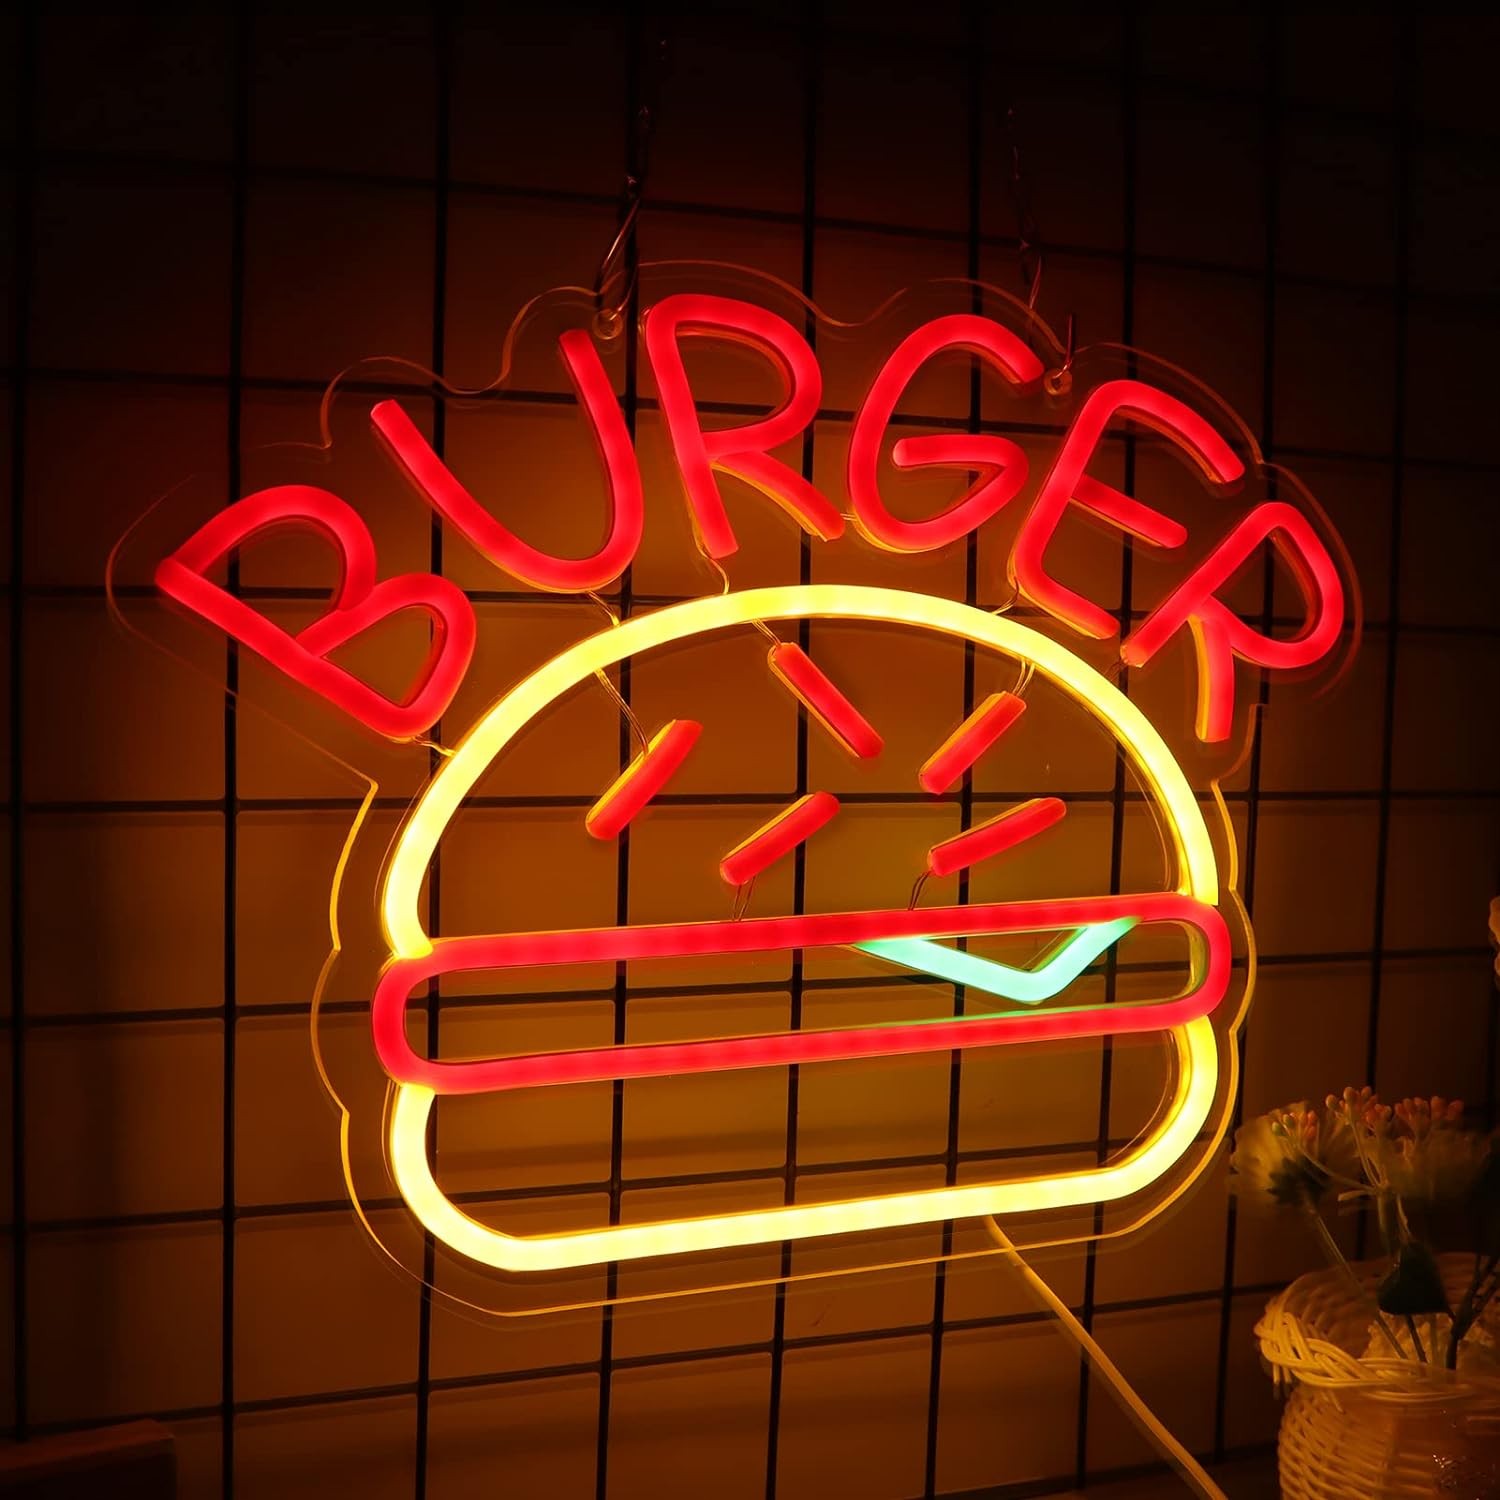 Logo me shenjë neoni me ndriçim burger në mur